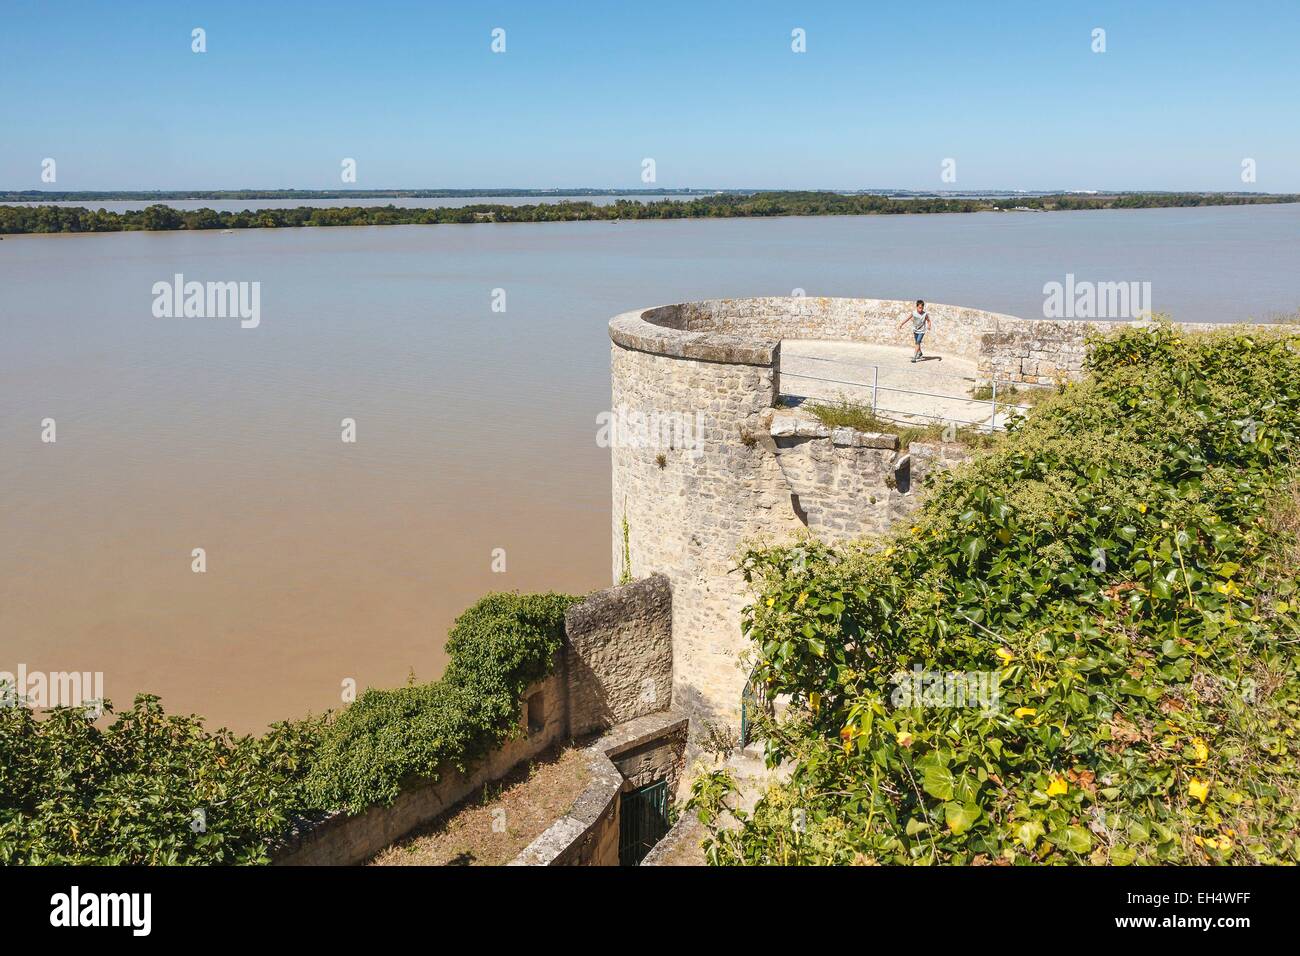 Frankreich, Gironde, Blaye, der Citadelle, l'Eguillette Turm, den Fluss Gironde und l ' Ile Nouvelle, Befestigungsanlagen von Vauban, als Weltkulturerbe der UNESCO gelistet Stockfoto